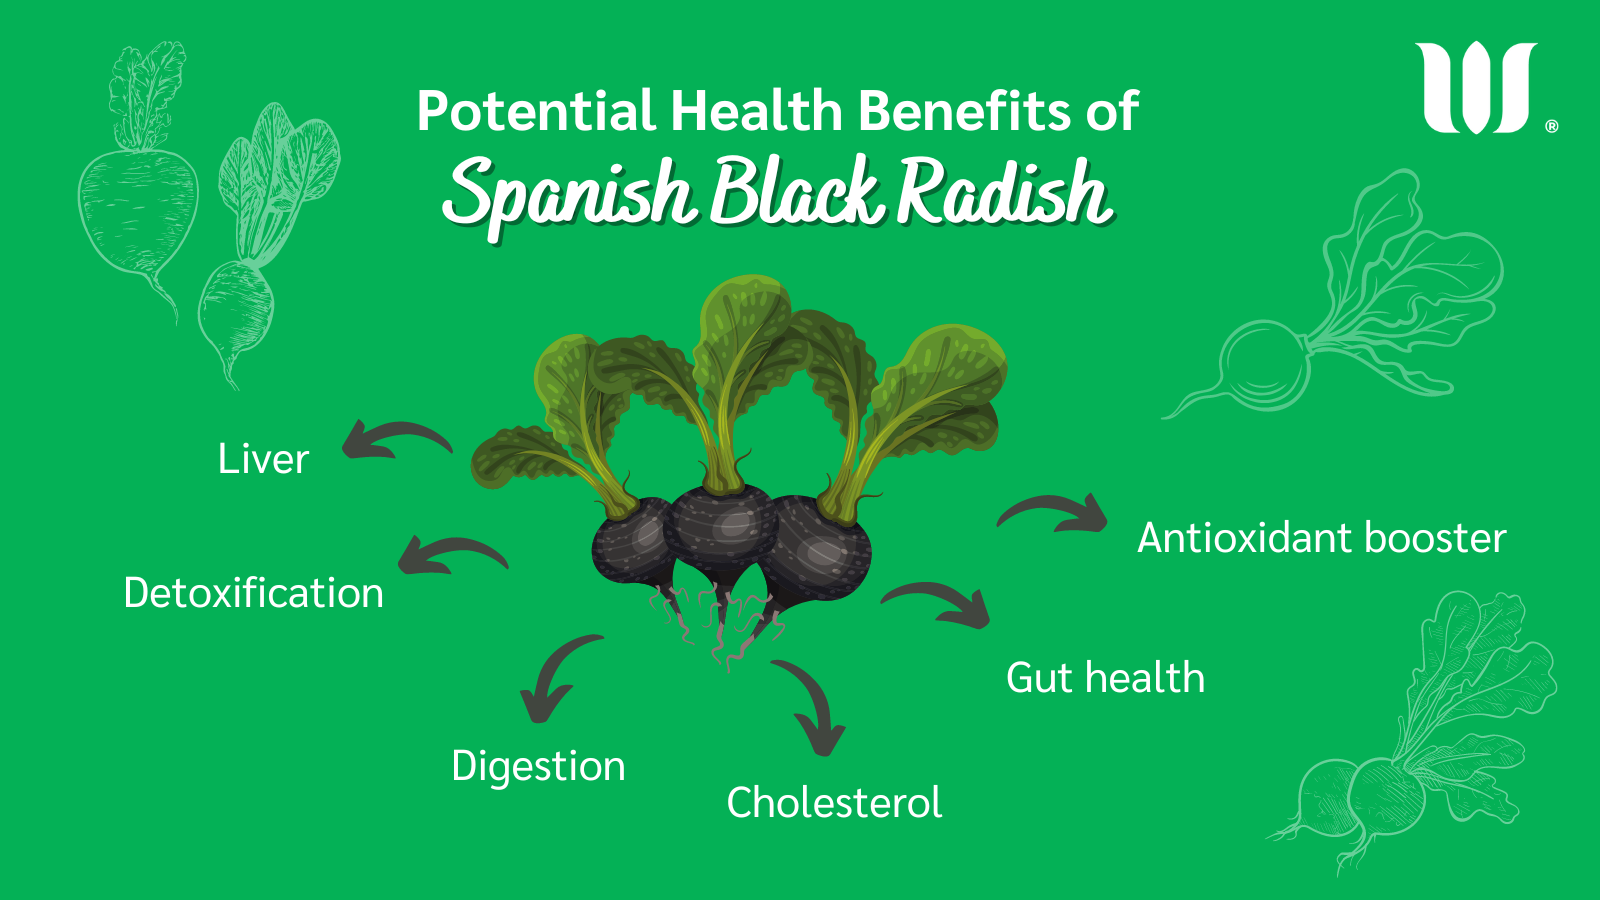 Spanish black radish benefits